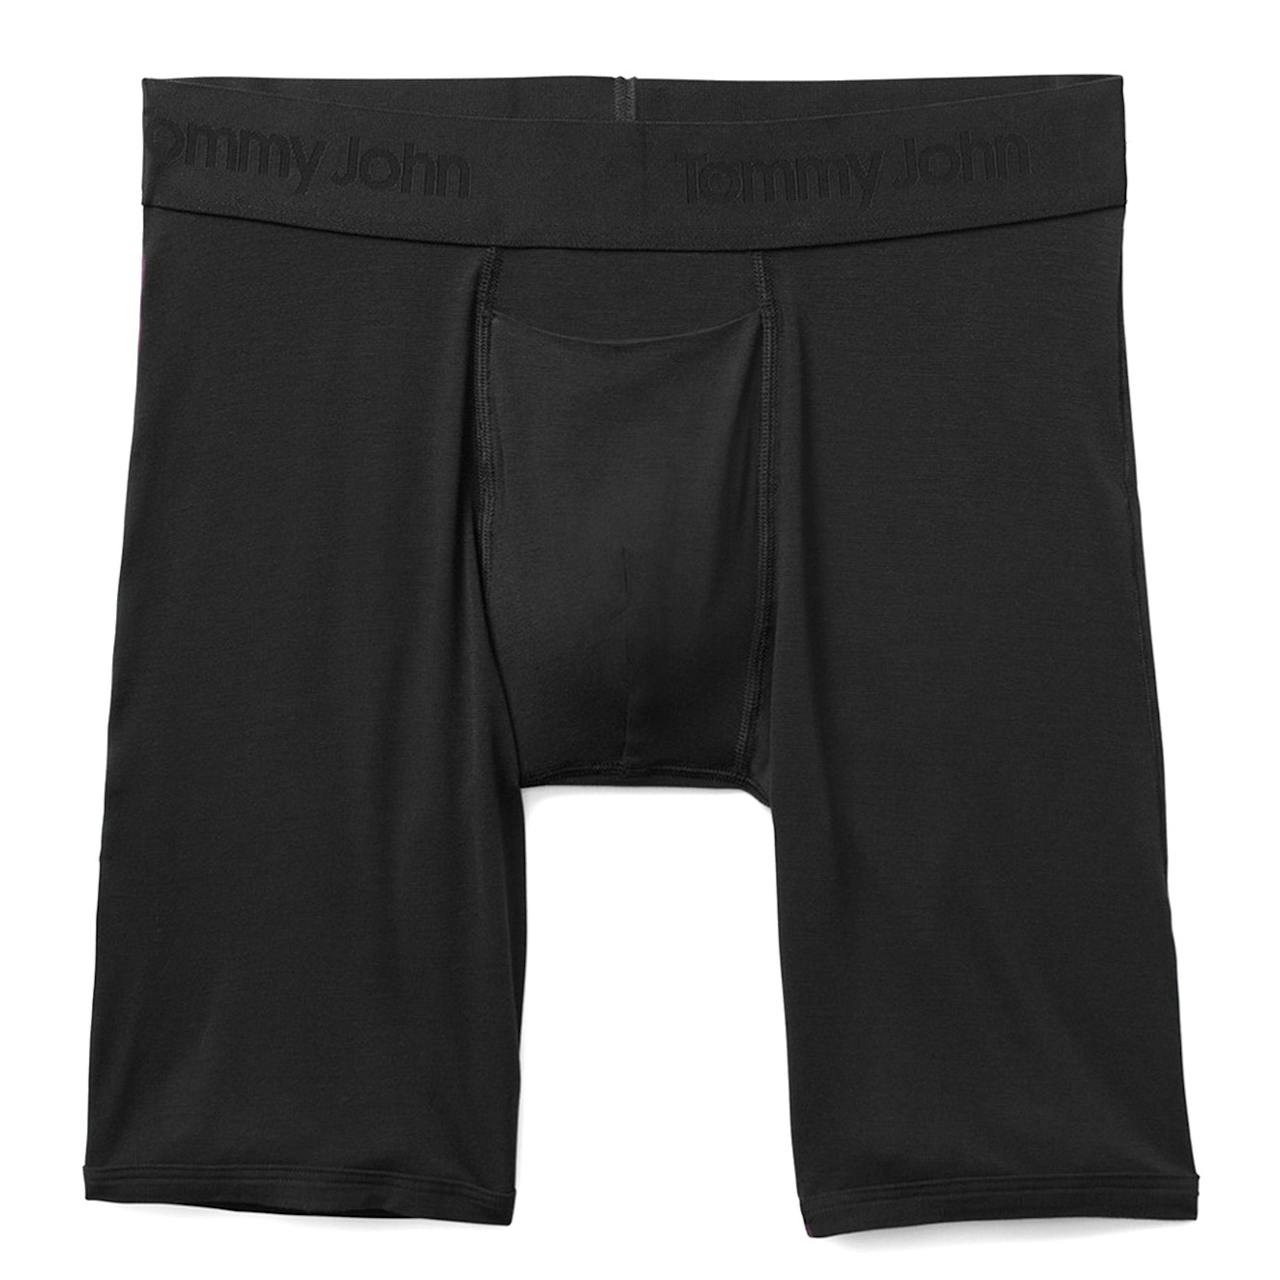 Tommy John Second Skin Boxer Briefs - Black, Underwear